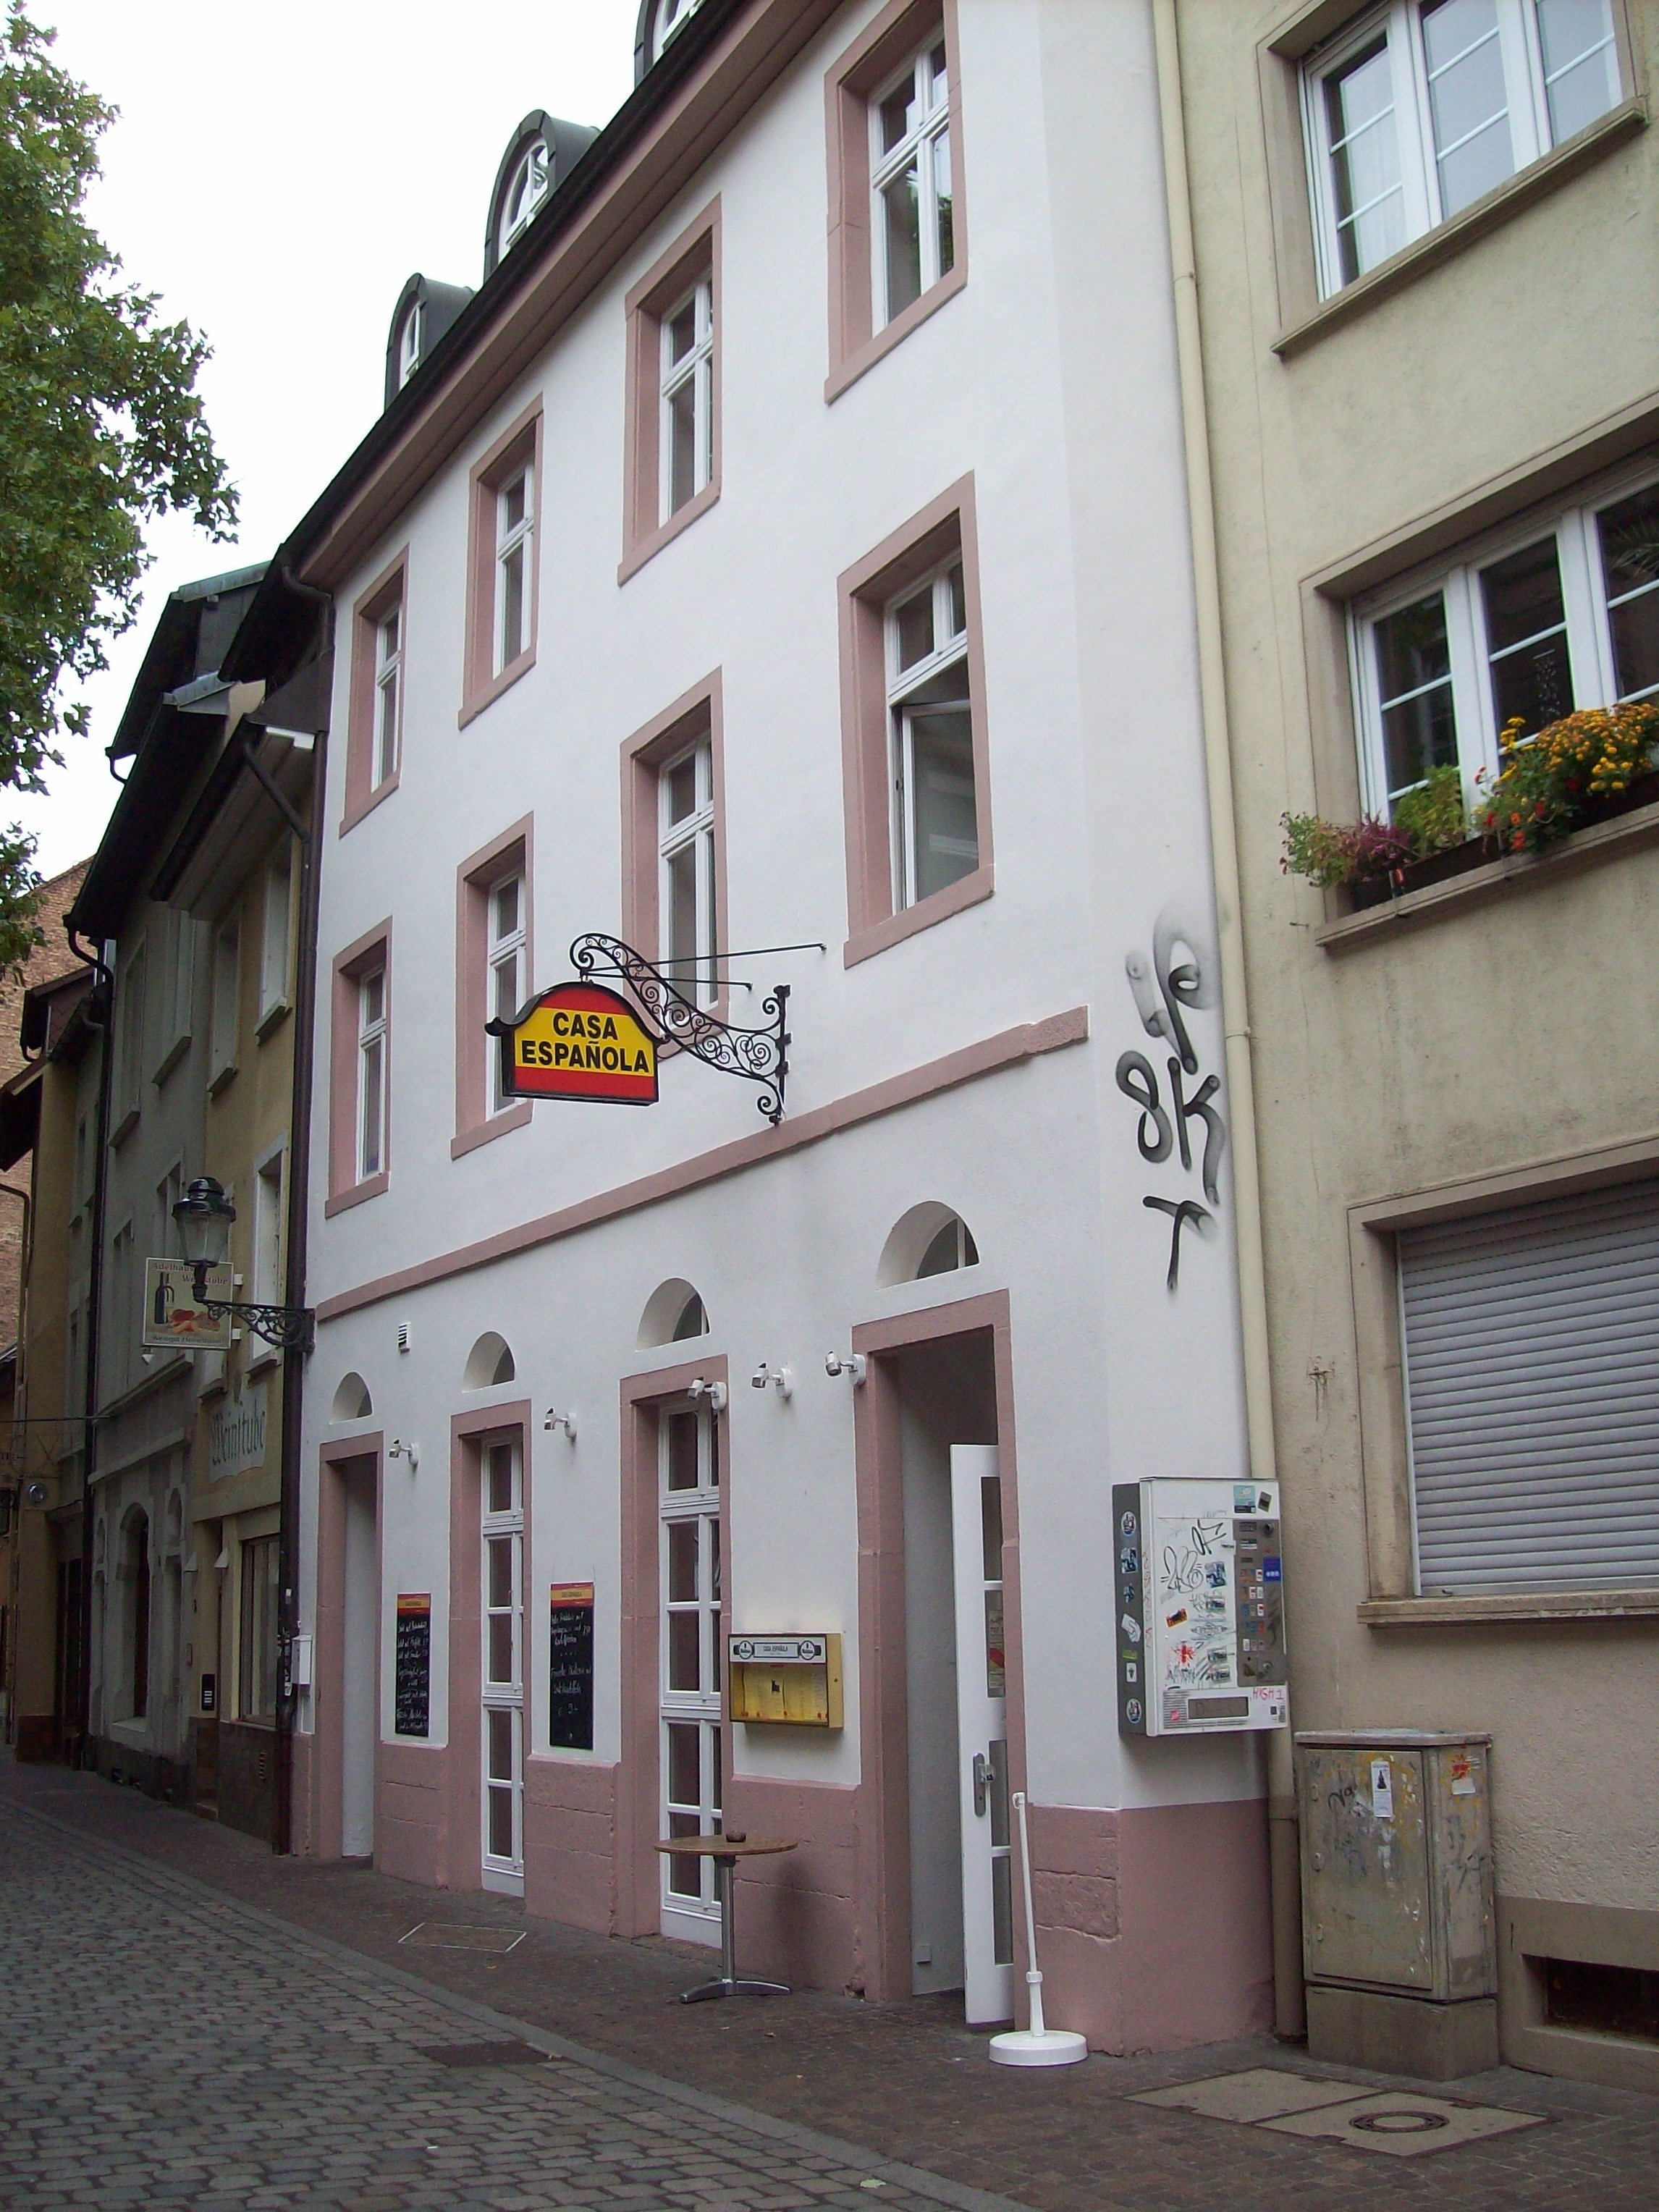 Bild 5 Casa Espanola in Freiburg im Breisgau